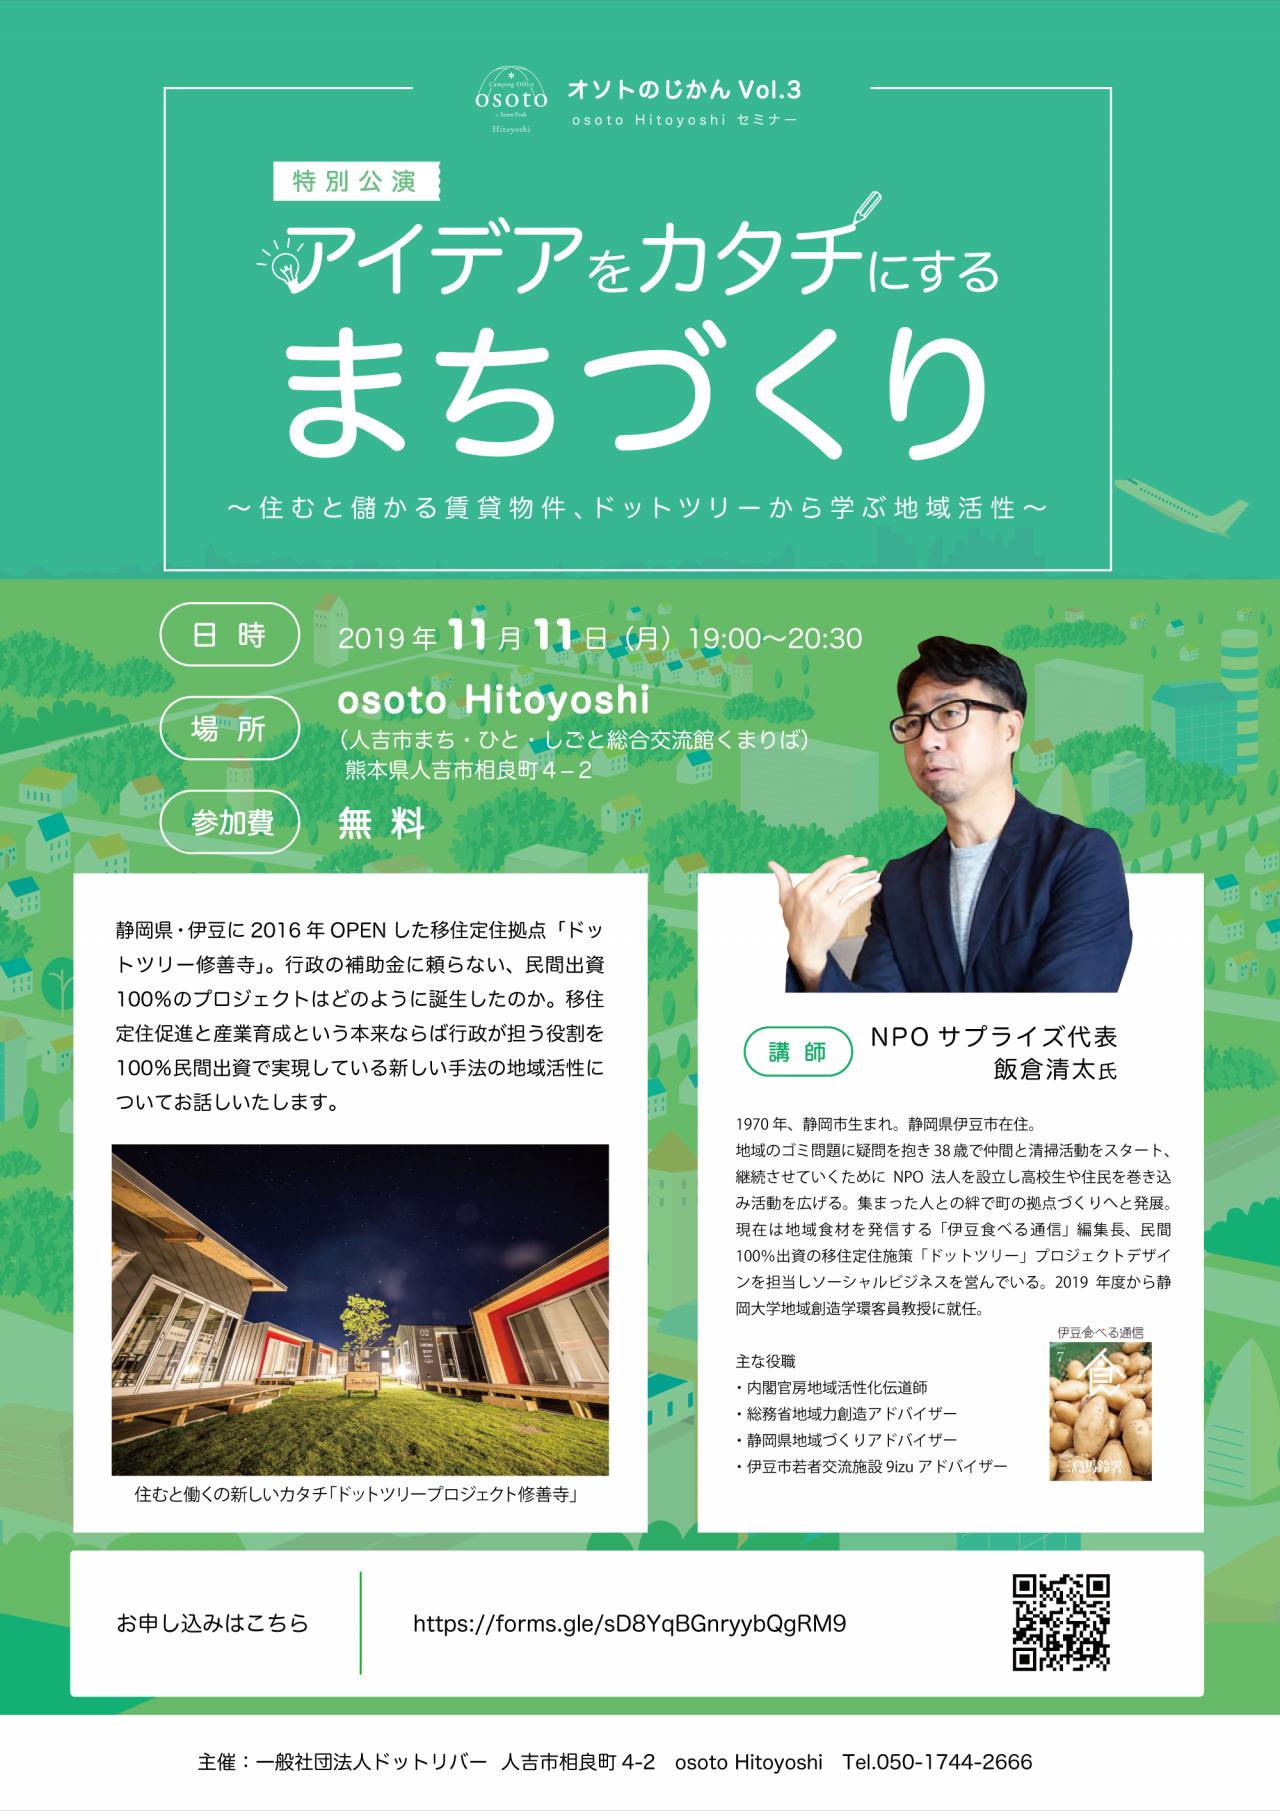 オソトのじかんVol.3 〜 osoto Hitoyoshi セミナー〜
「アイデアをカタチにするまちづくり」